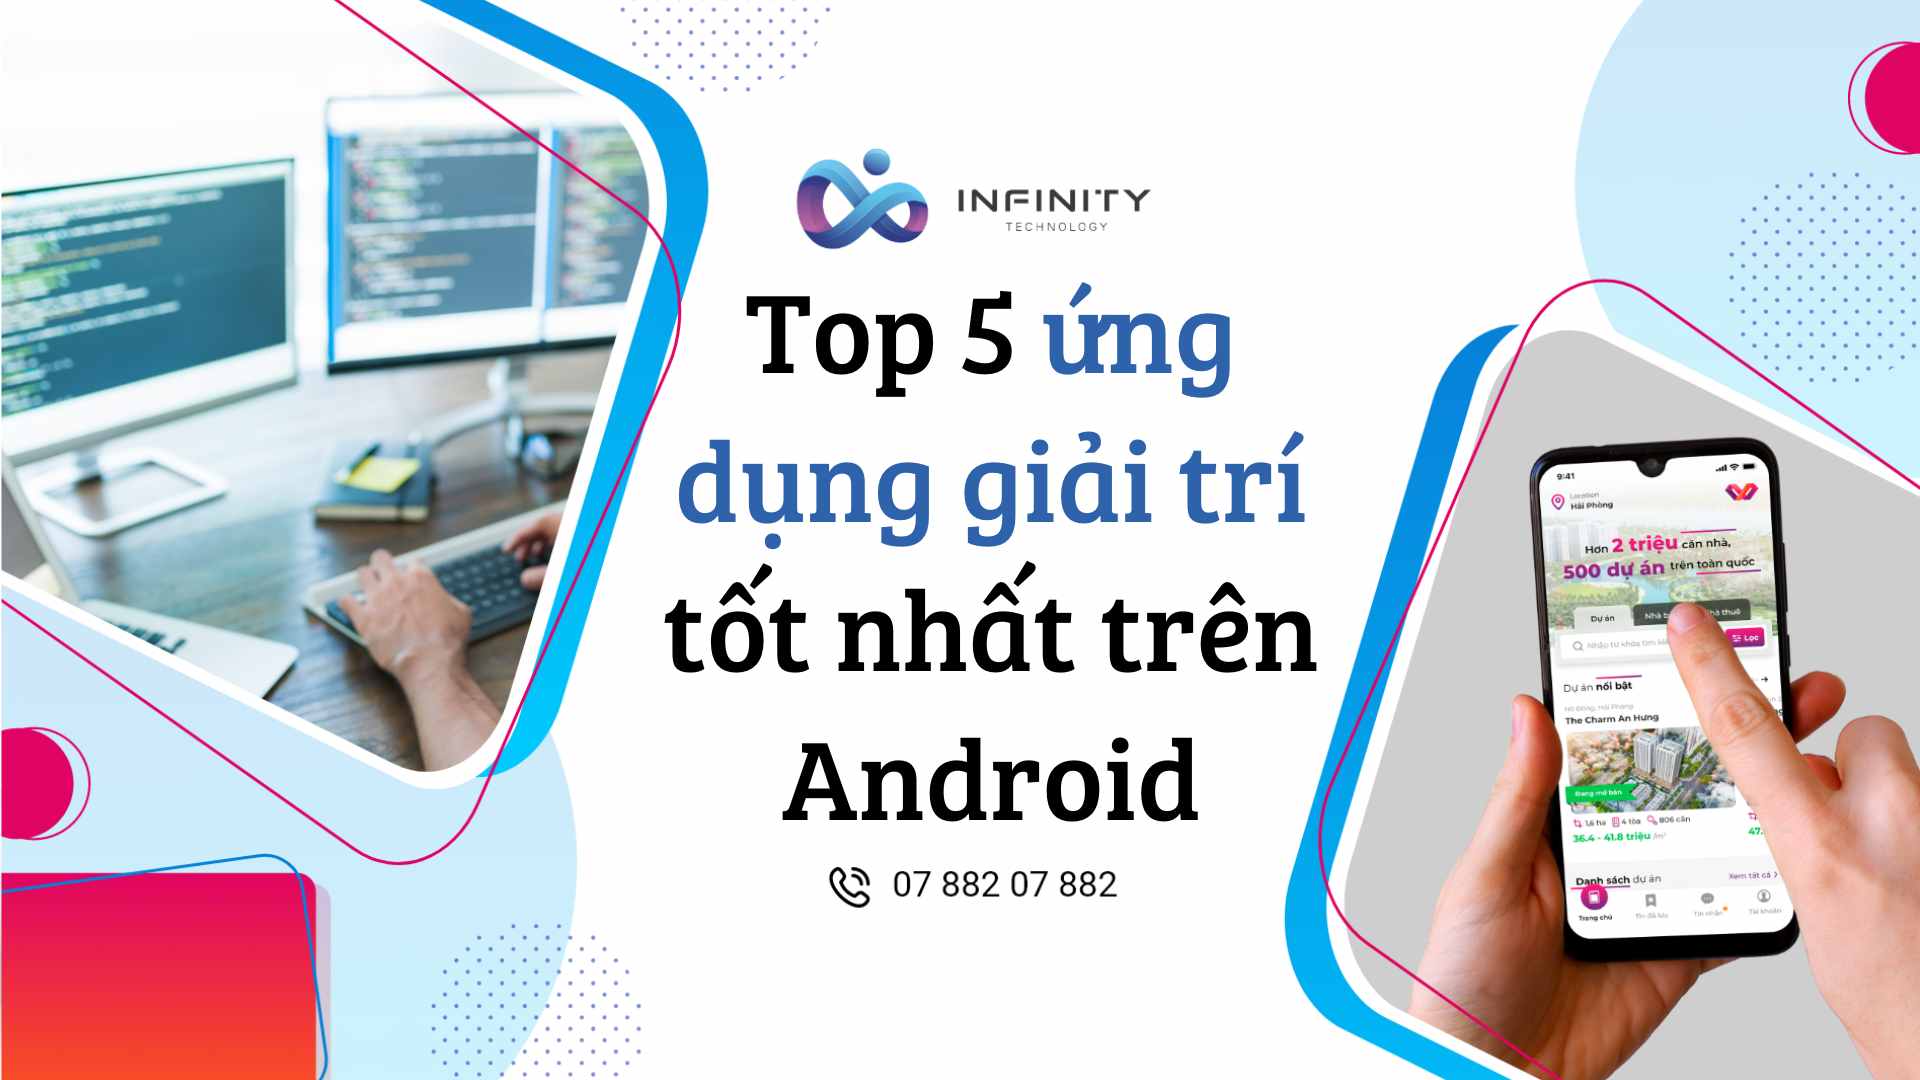 Top 5 ứng dụng giải trí tốt nhất trên Android